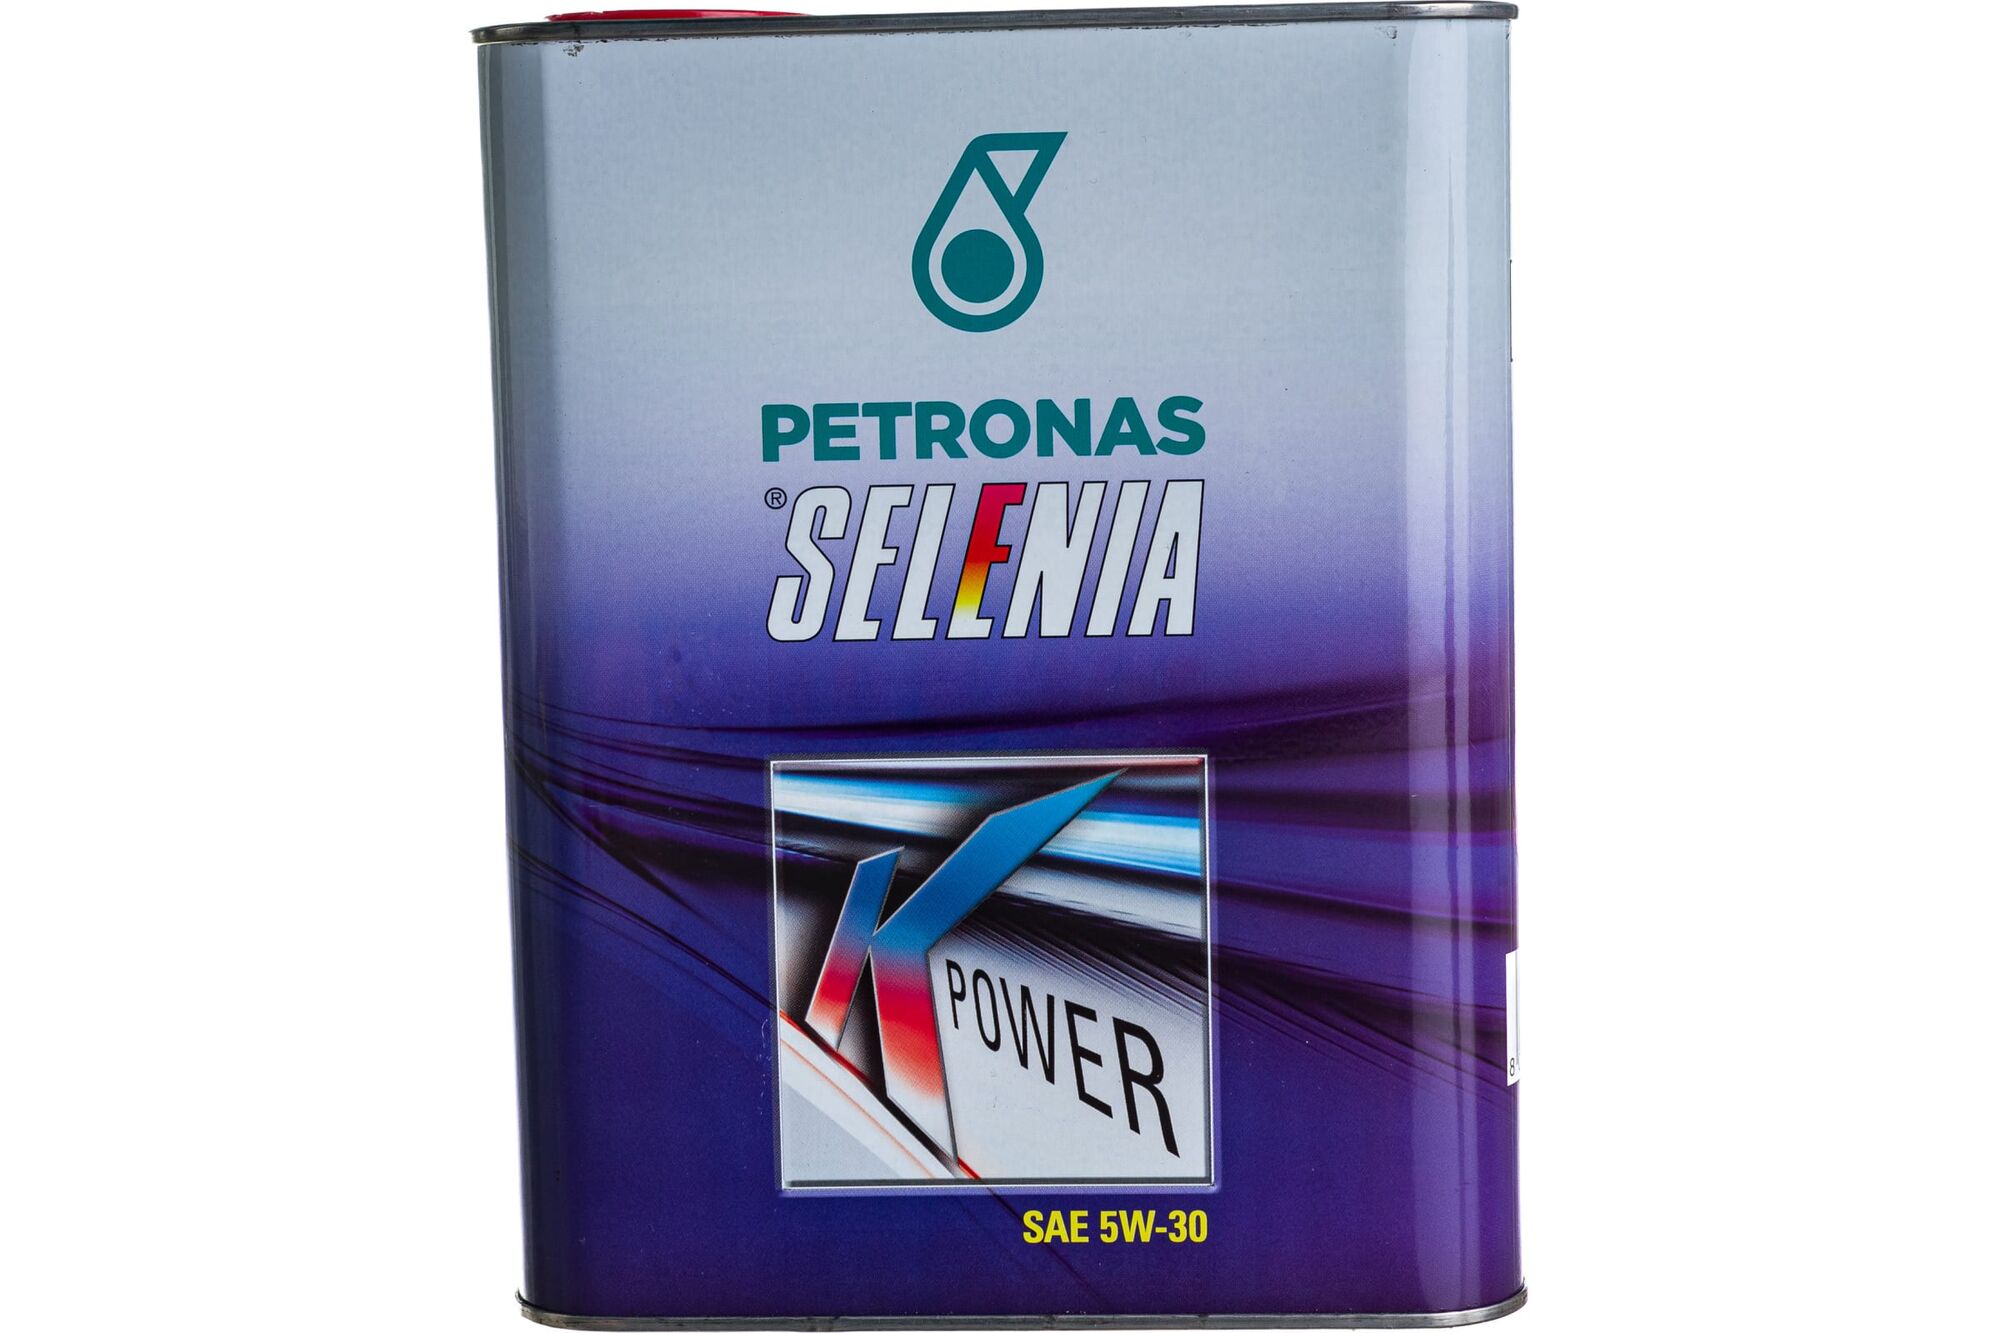 Моторное масло PETRONAS SELENIA К POWER синтетическое, 5W30, 2 л 70025GC5EU Petronas 4